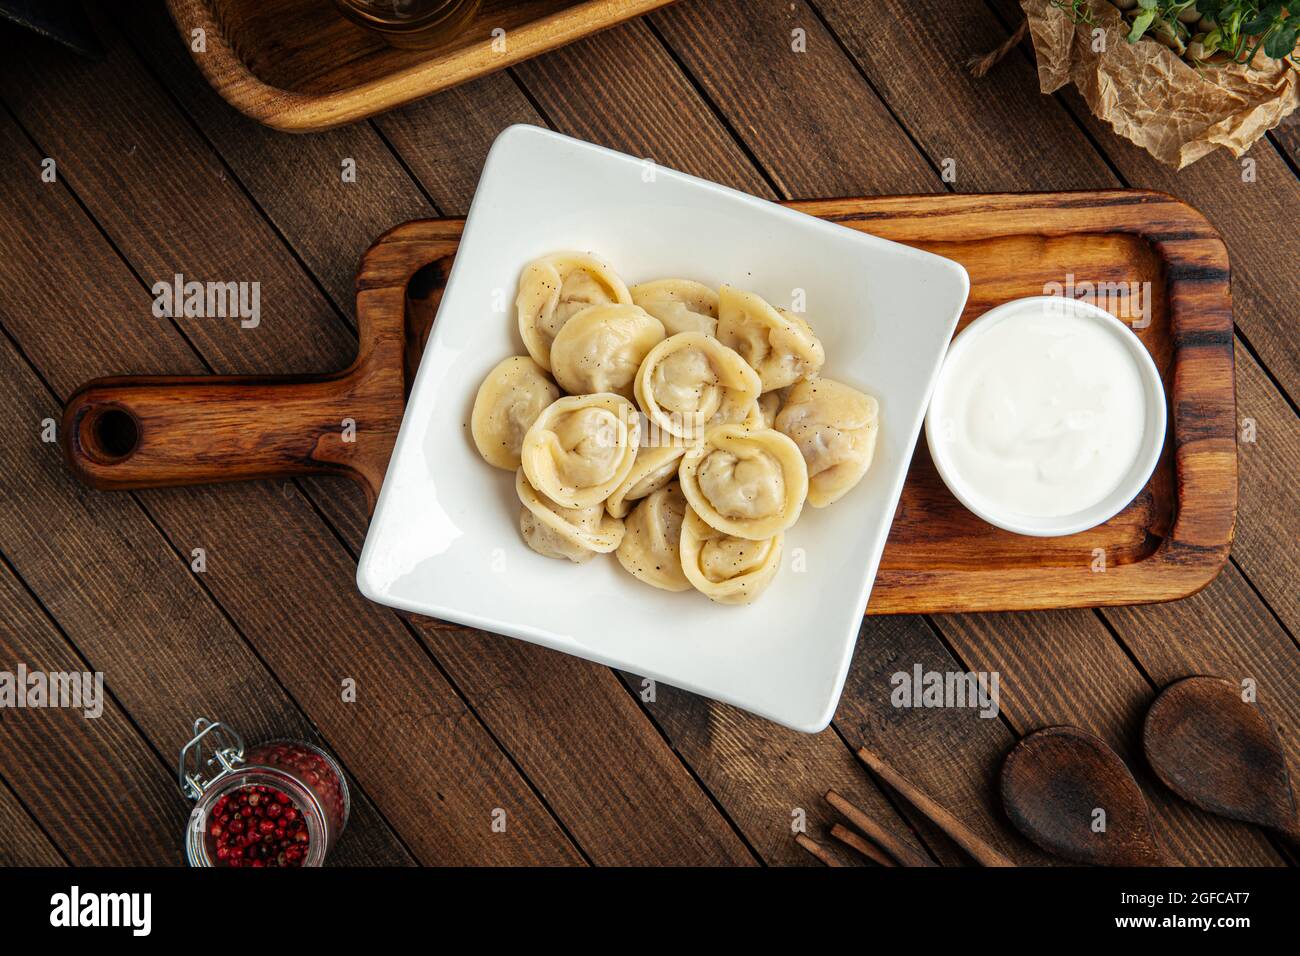 Russian pelmeni dumplings with sour cream Stock Photo